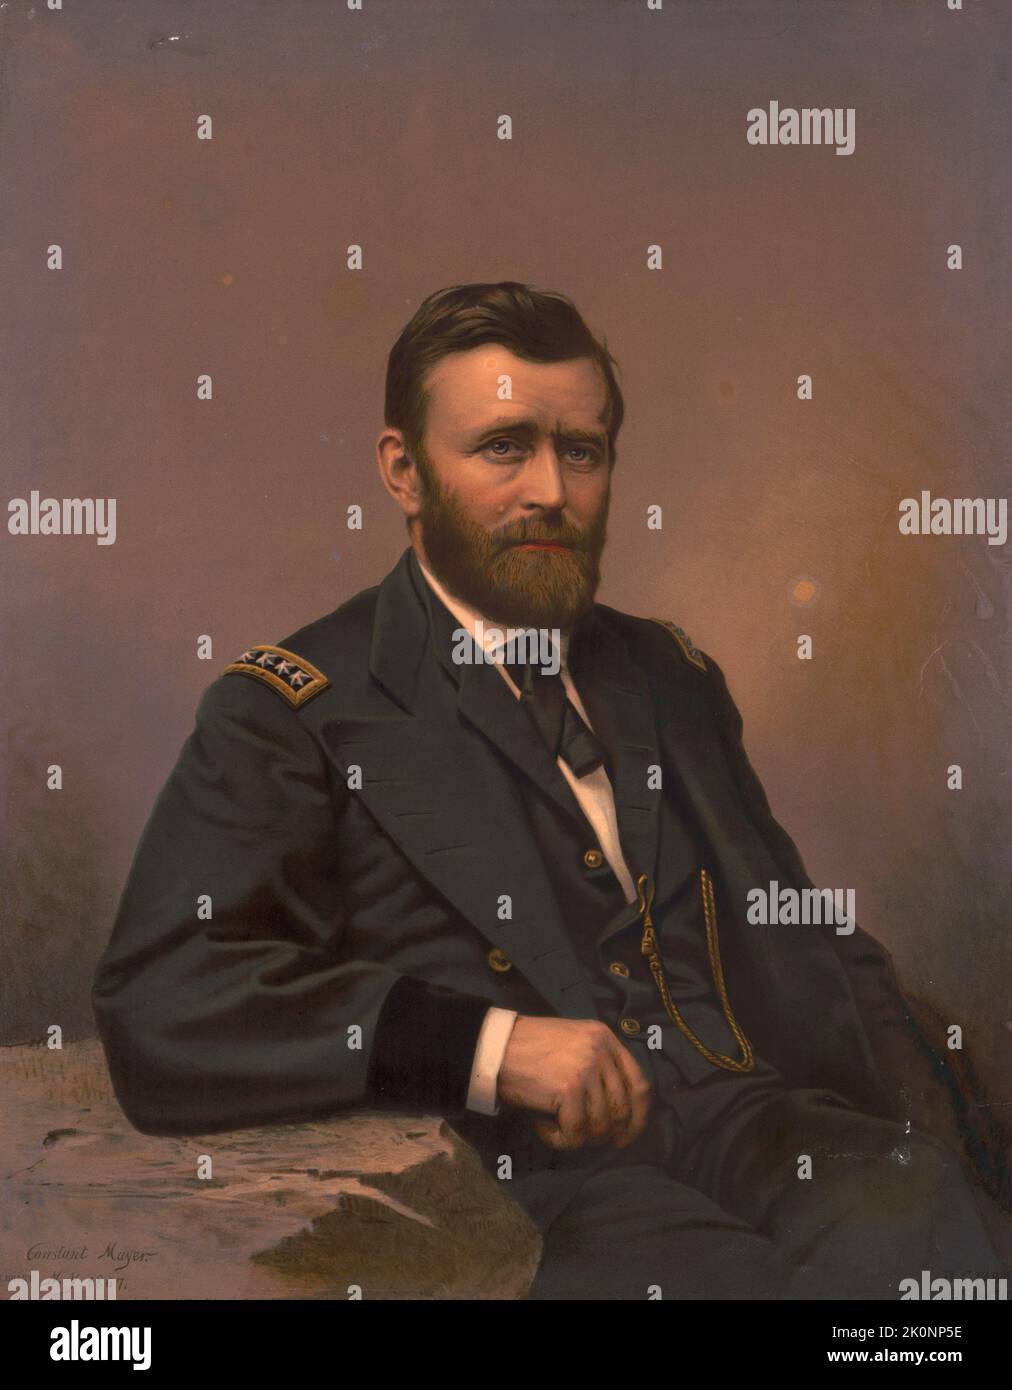 Un tableau d'Ulysses Grant, le prédident des États-Unis en 18th. Il est vu ici dans son uniforme de guerre civile d'un général de l'armée américaine. Banque D'Images